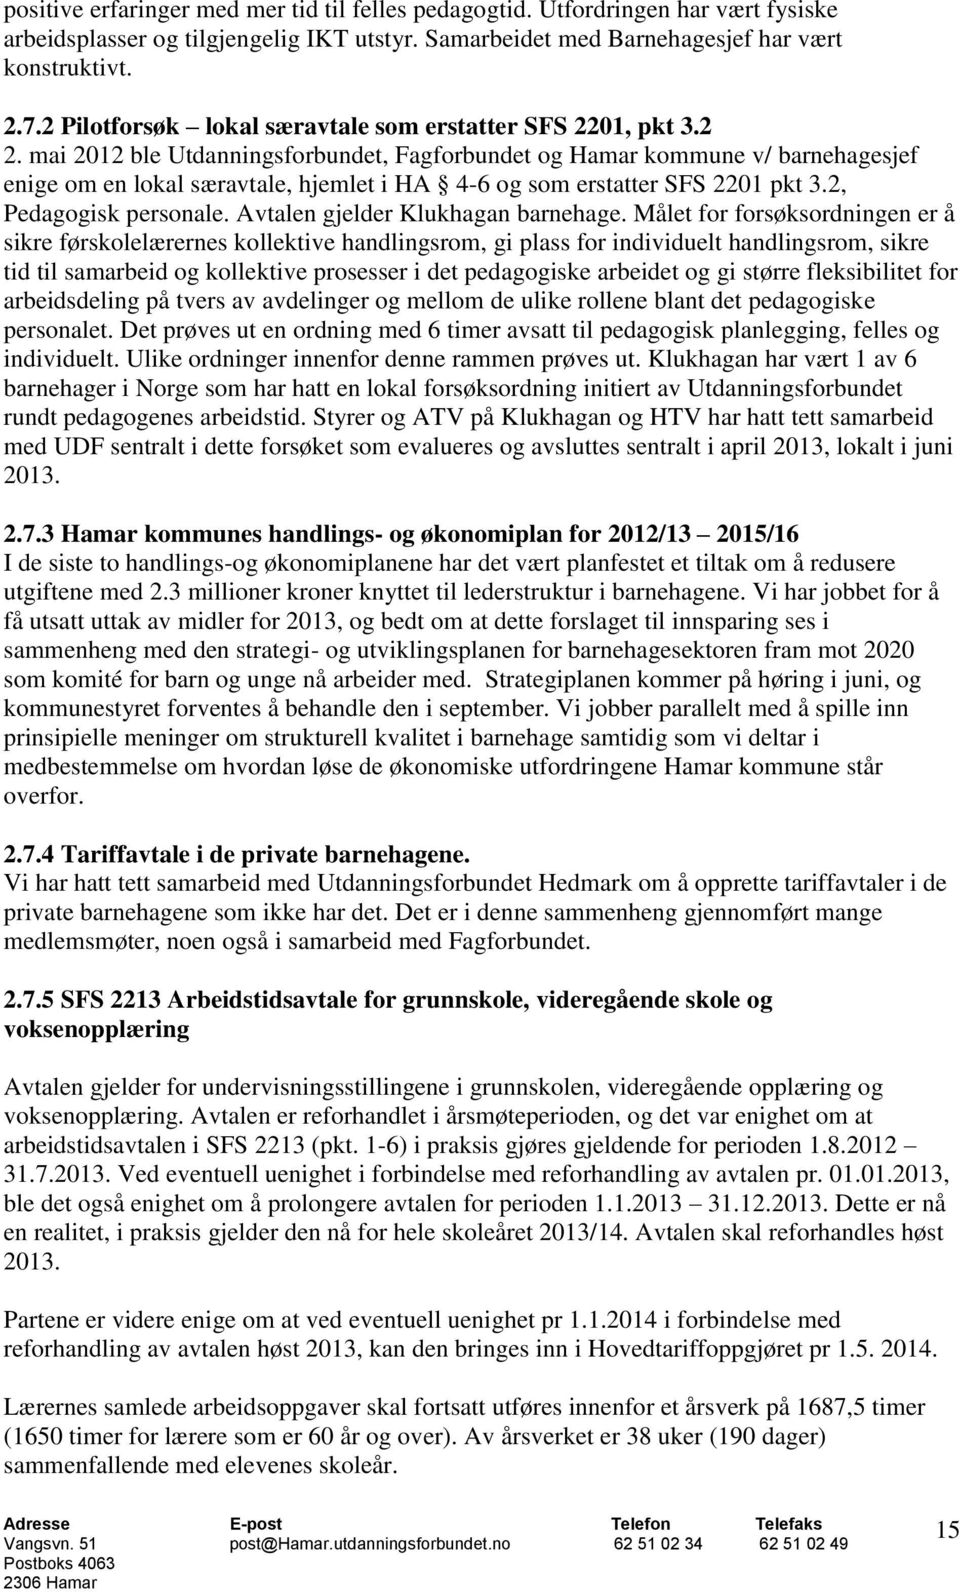 mai 2012 ble Utdanningsforbundet, Fagforbundet og Hamar kommune v/ barnehagesjef enige om en lokal særavtale, hjemlet i HA 4-6 og som erstatter SFS 2201 pkt 3.2, Pedagogisk personale.